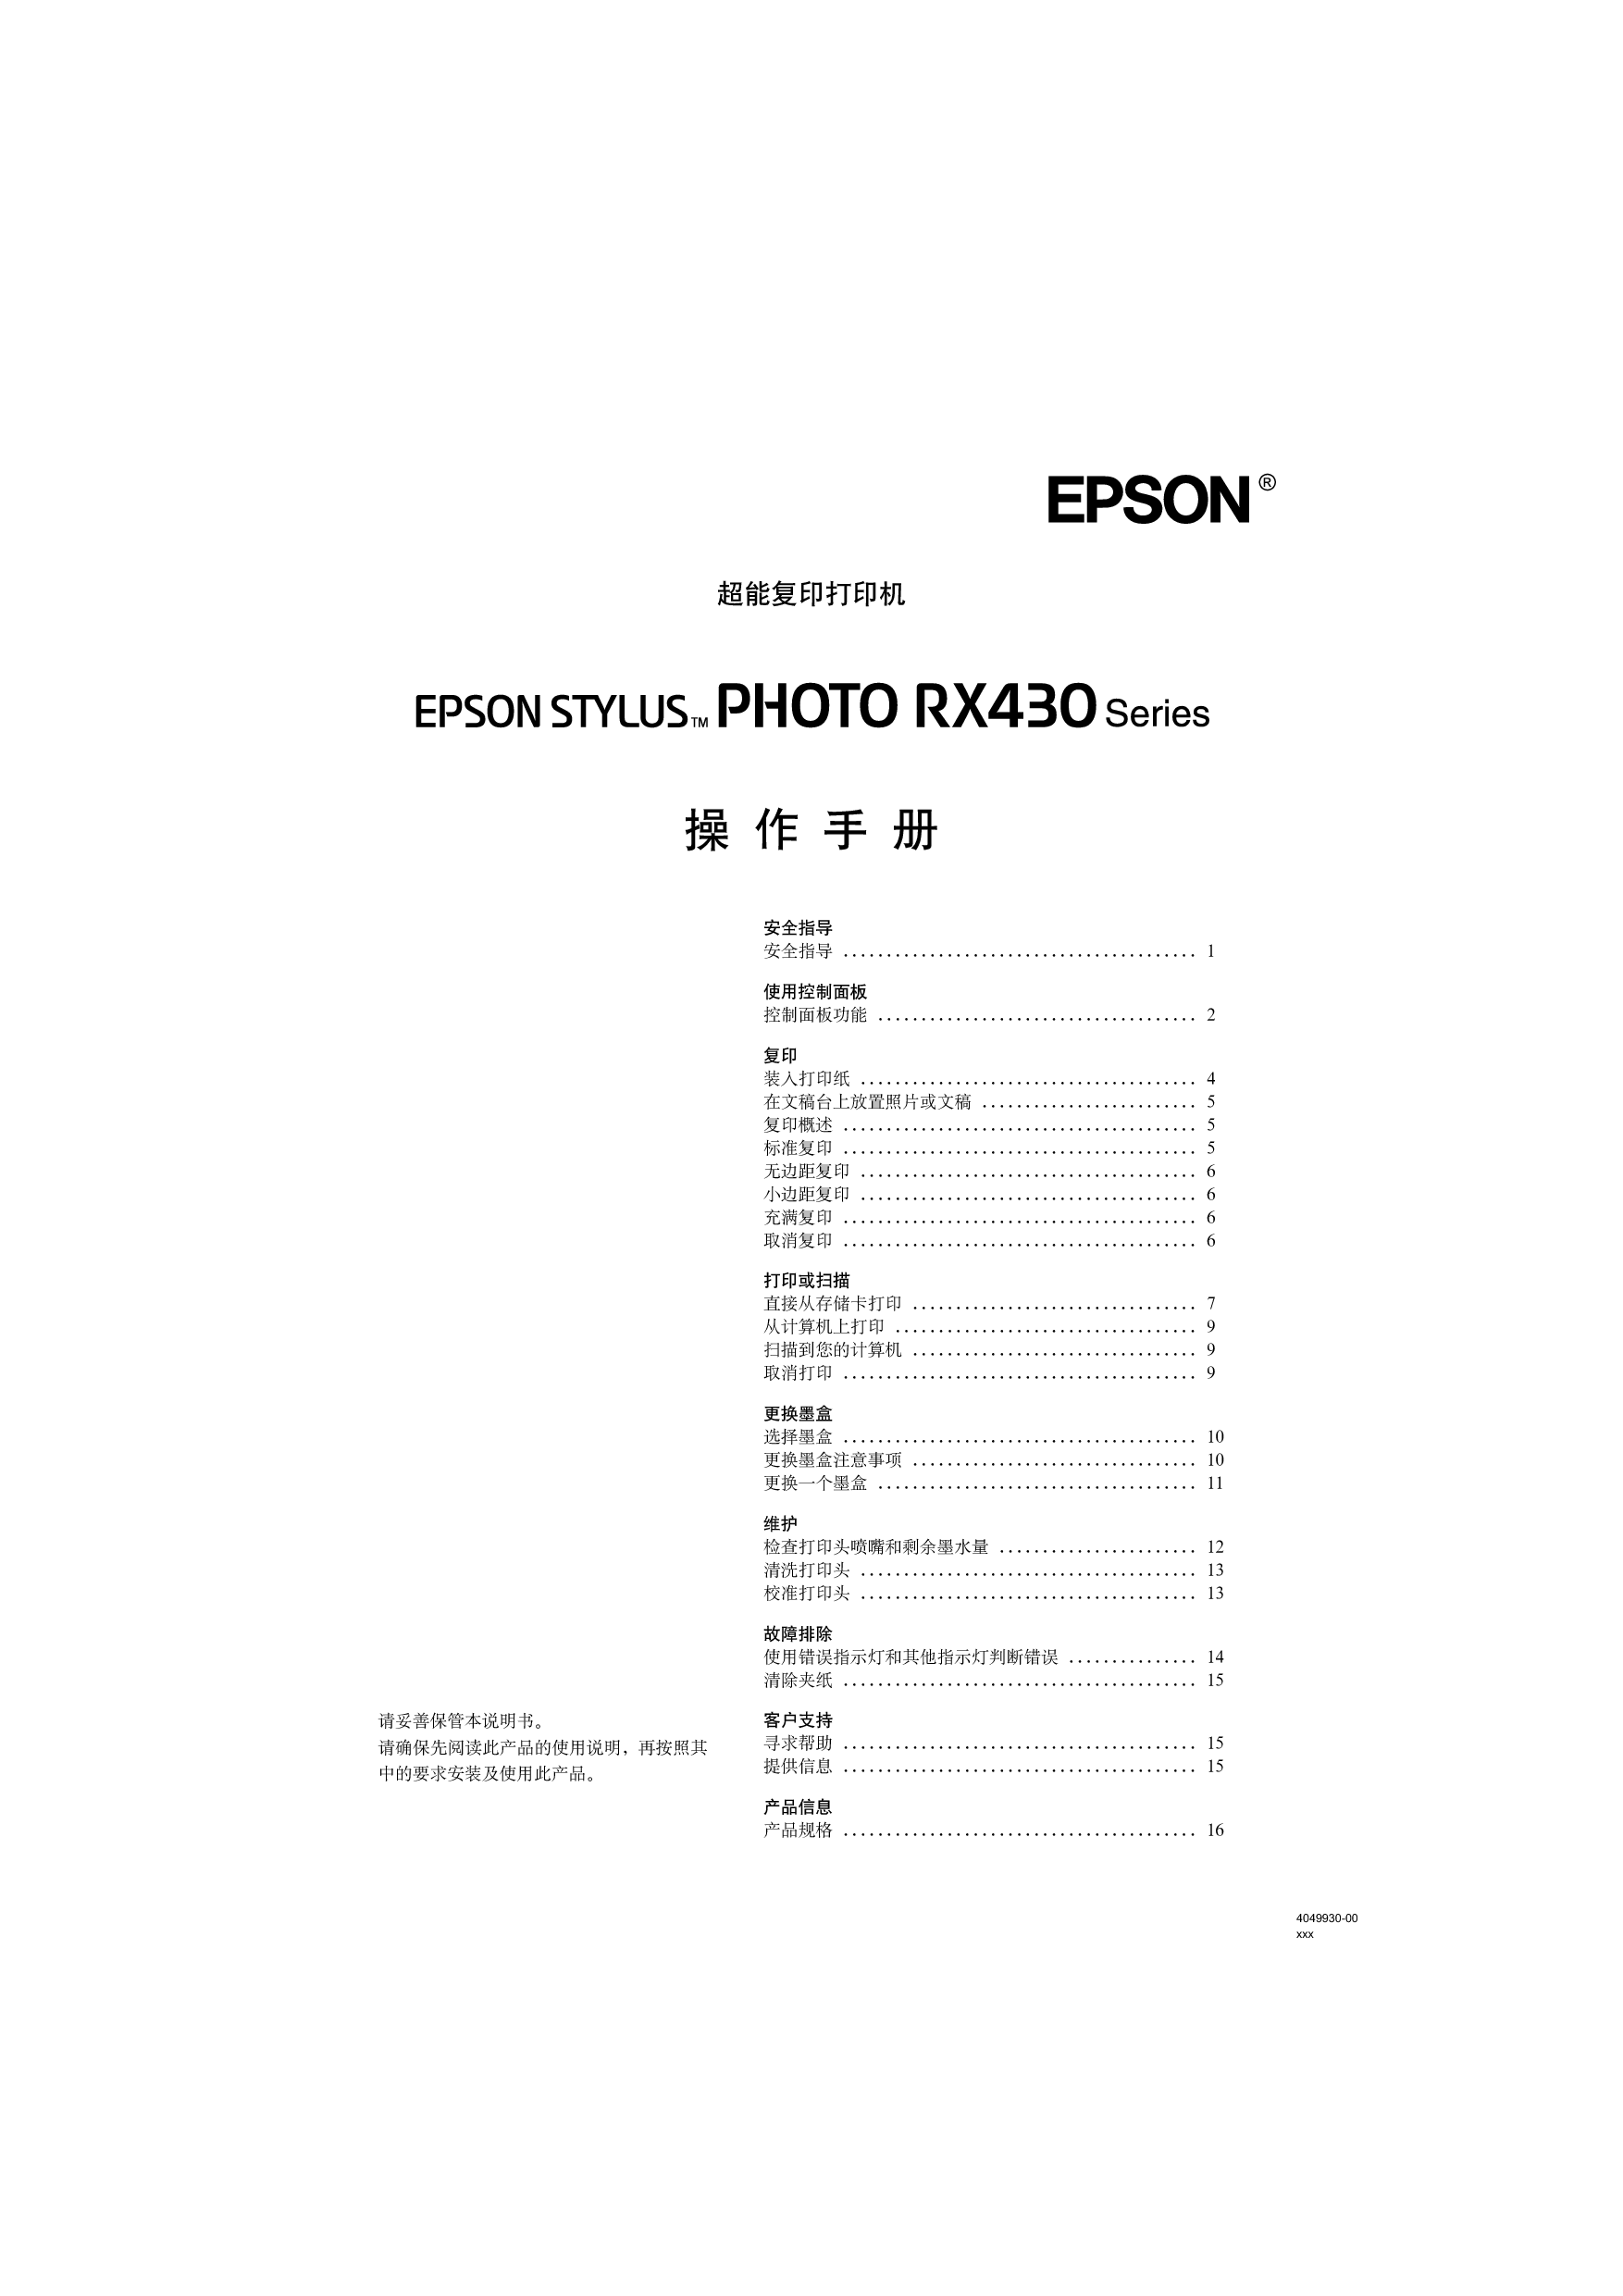 爱普生 Epson STYLUS PHOTO RX430 操作手册 封面